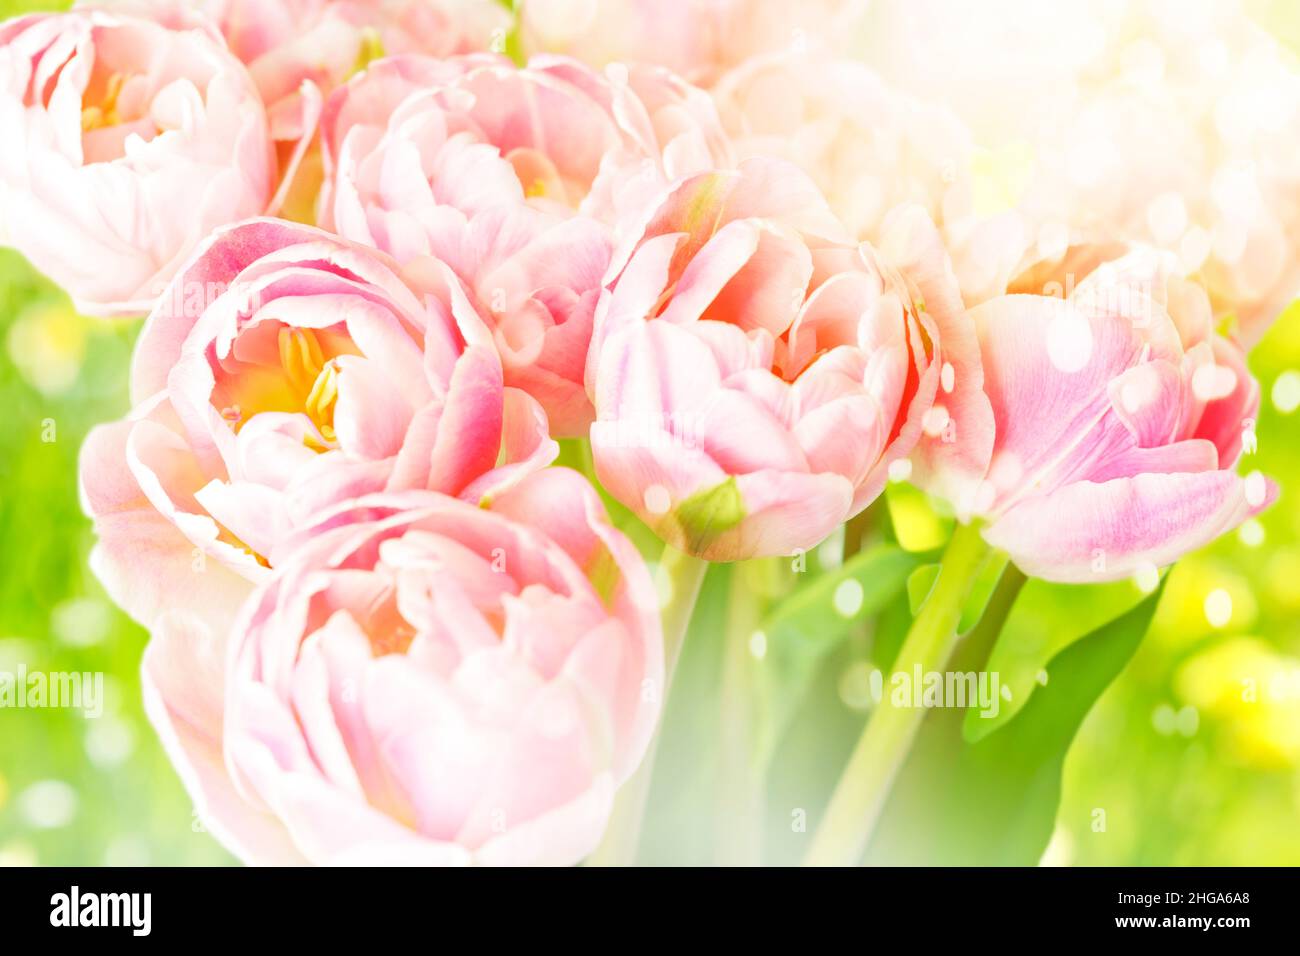 Rosa Tulpen-Blumen auf grünem Hintergrund mit Lichtreflexeffekt, nostalgische Grußkarten-Vorlage für jede Feier im Frühjahr. Stockfoto